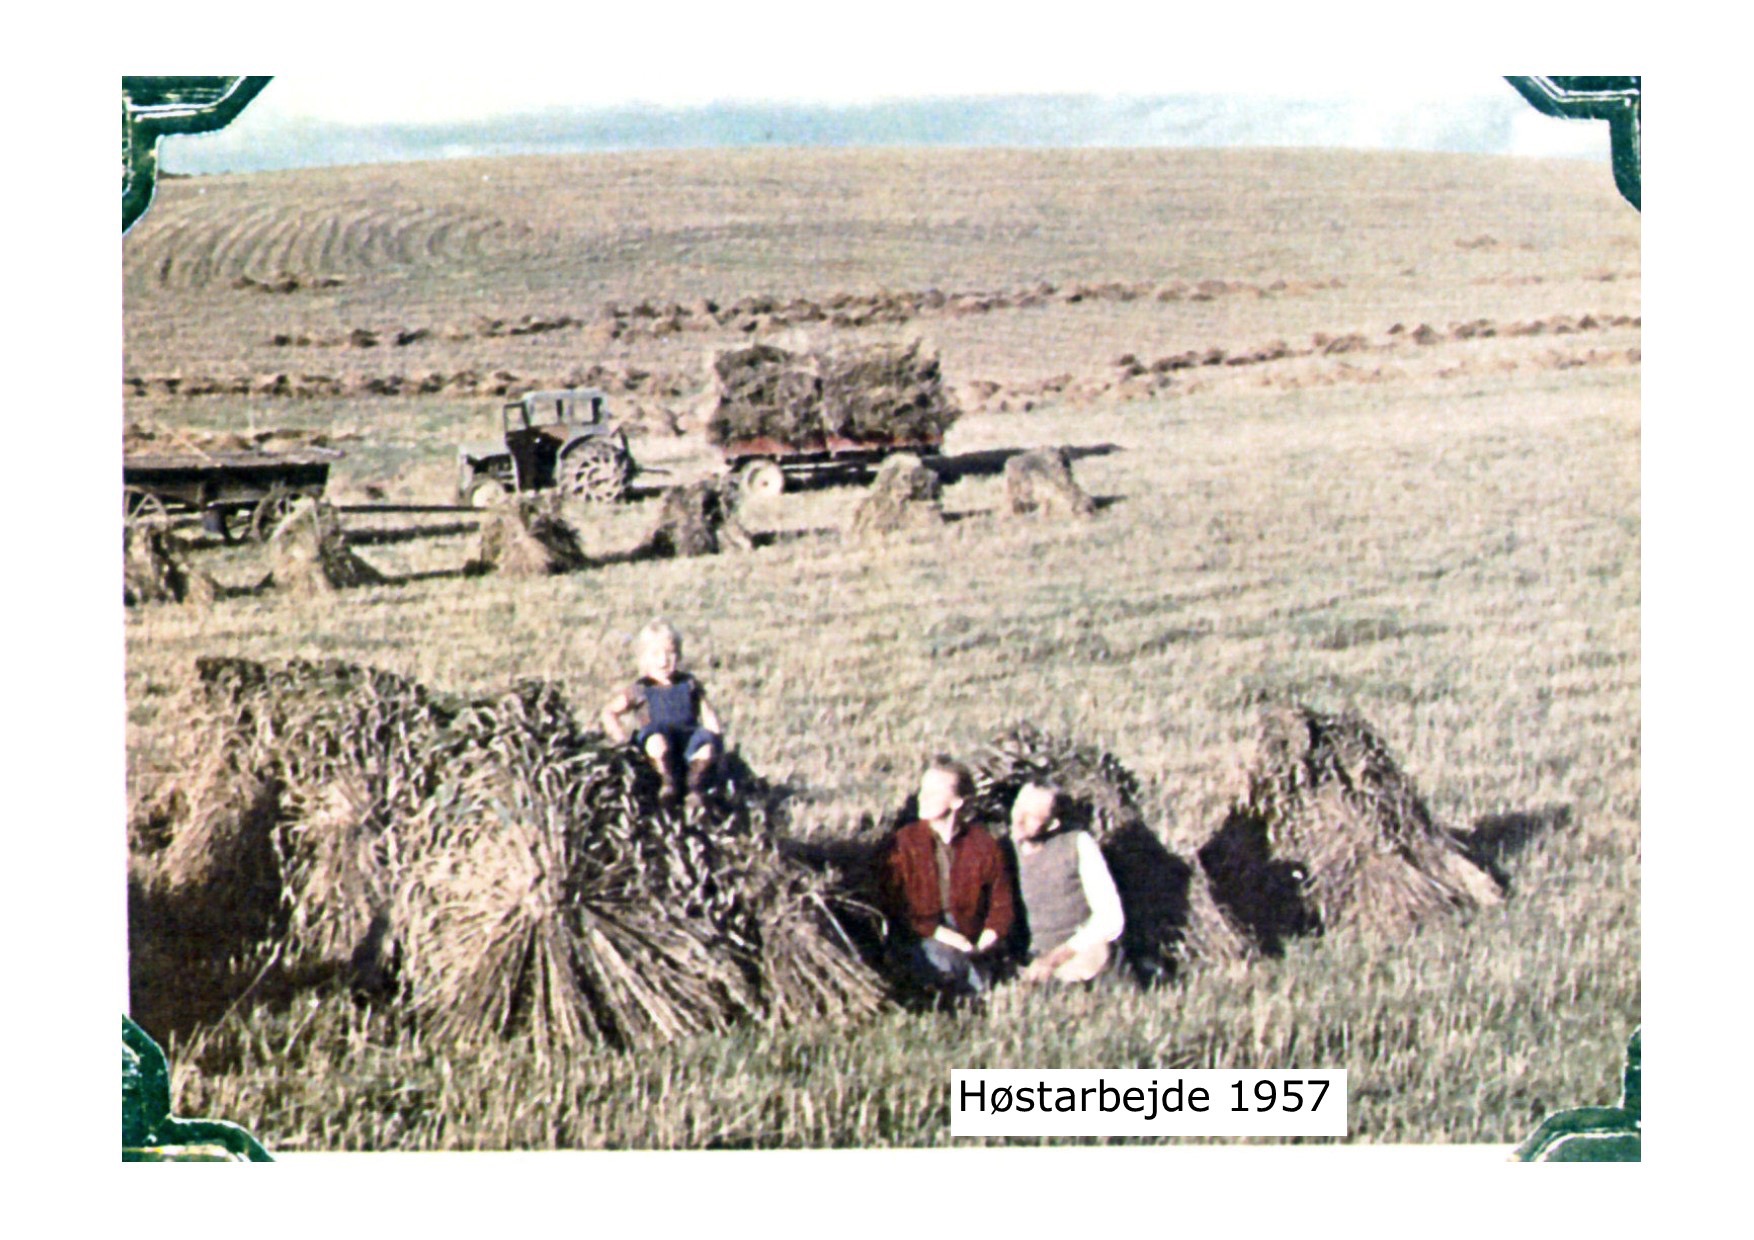 Høstarbejde 1957 